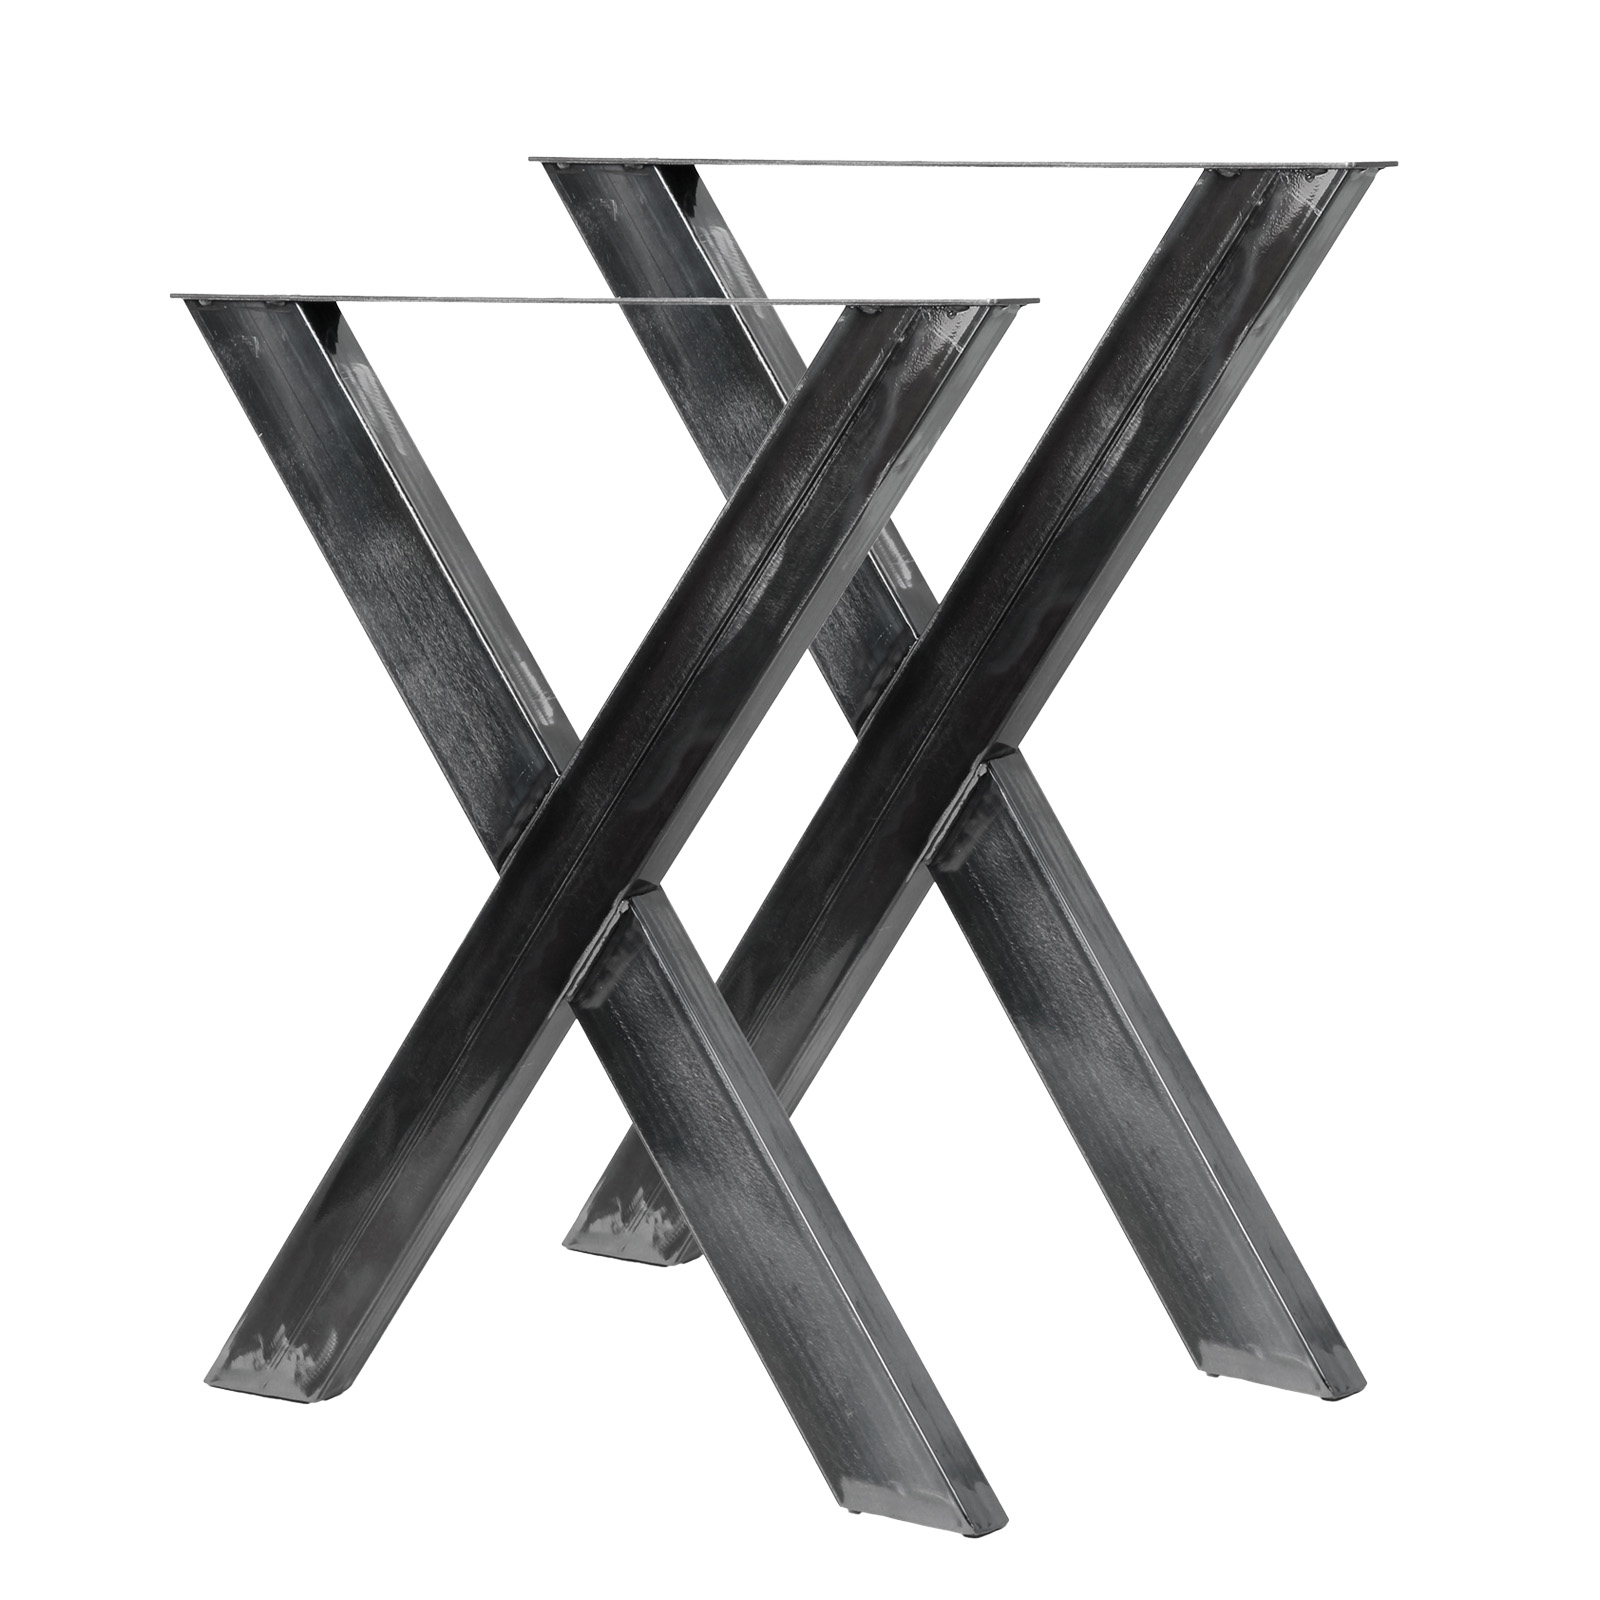 Tischkufen 72x60 cm klarlackbeschichtet Stahl Tischgestell Tischbeine